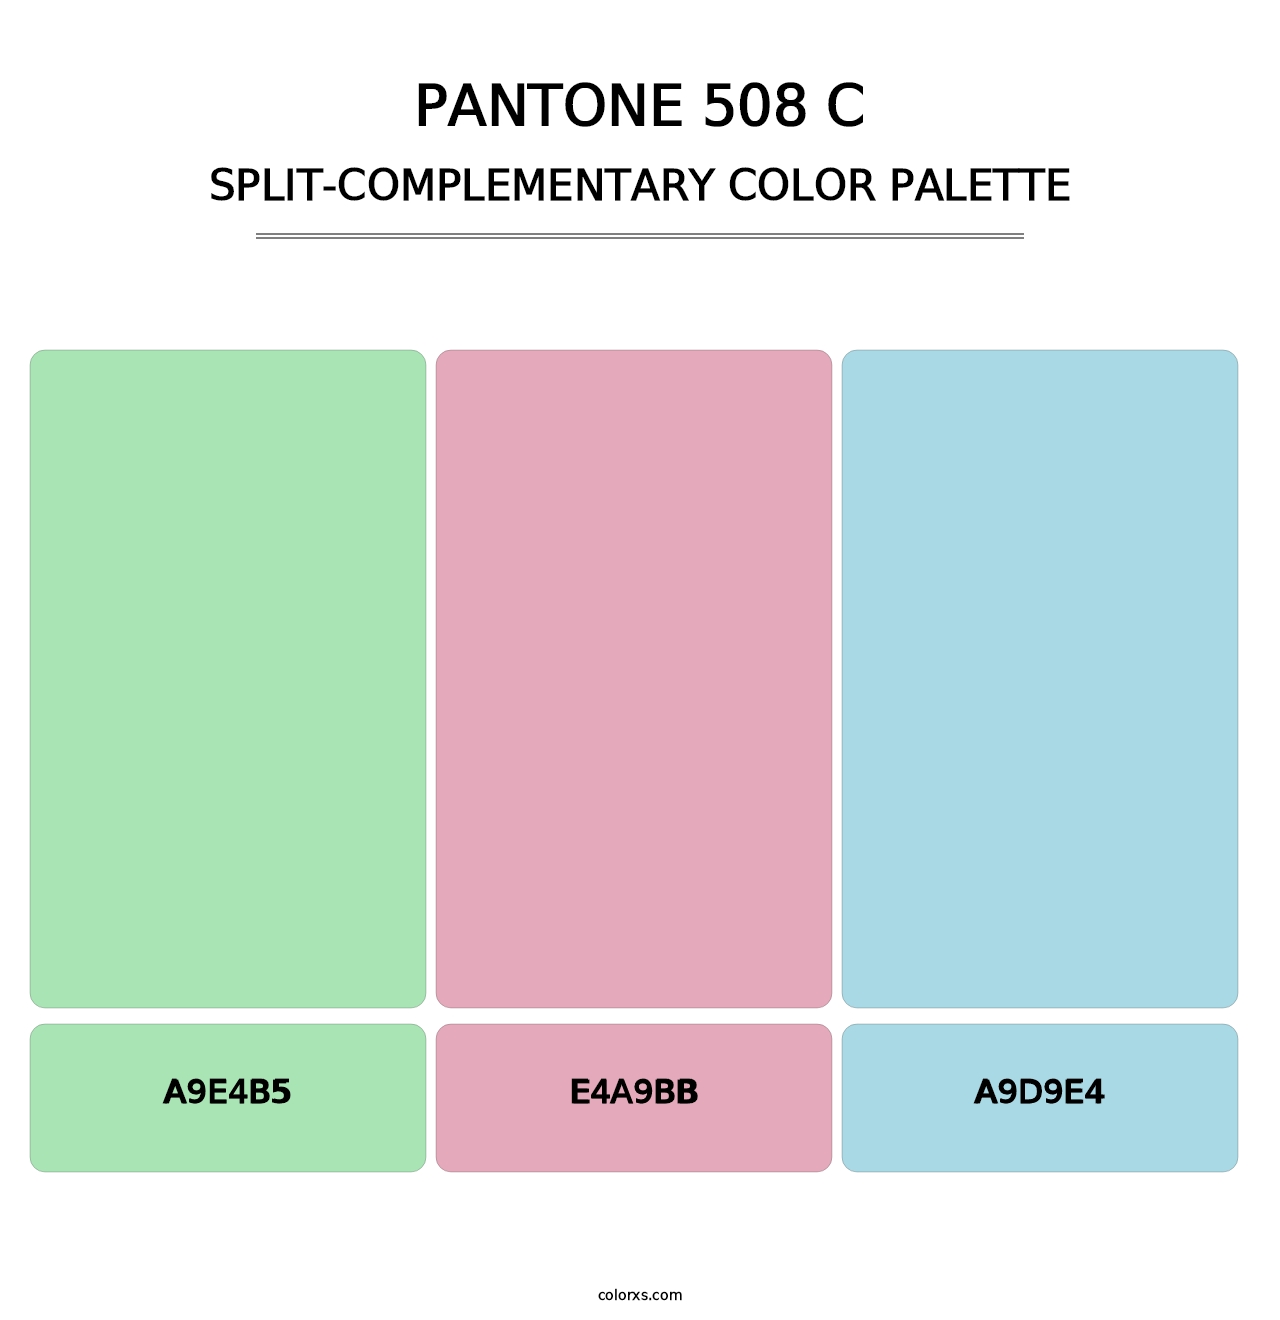 PANTONE 508 C - Split-Complementary Color Palette